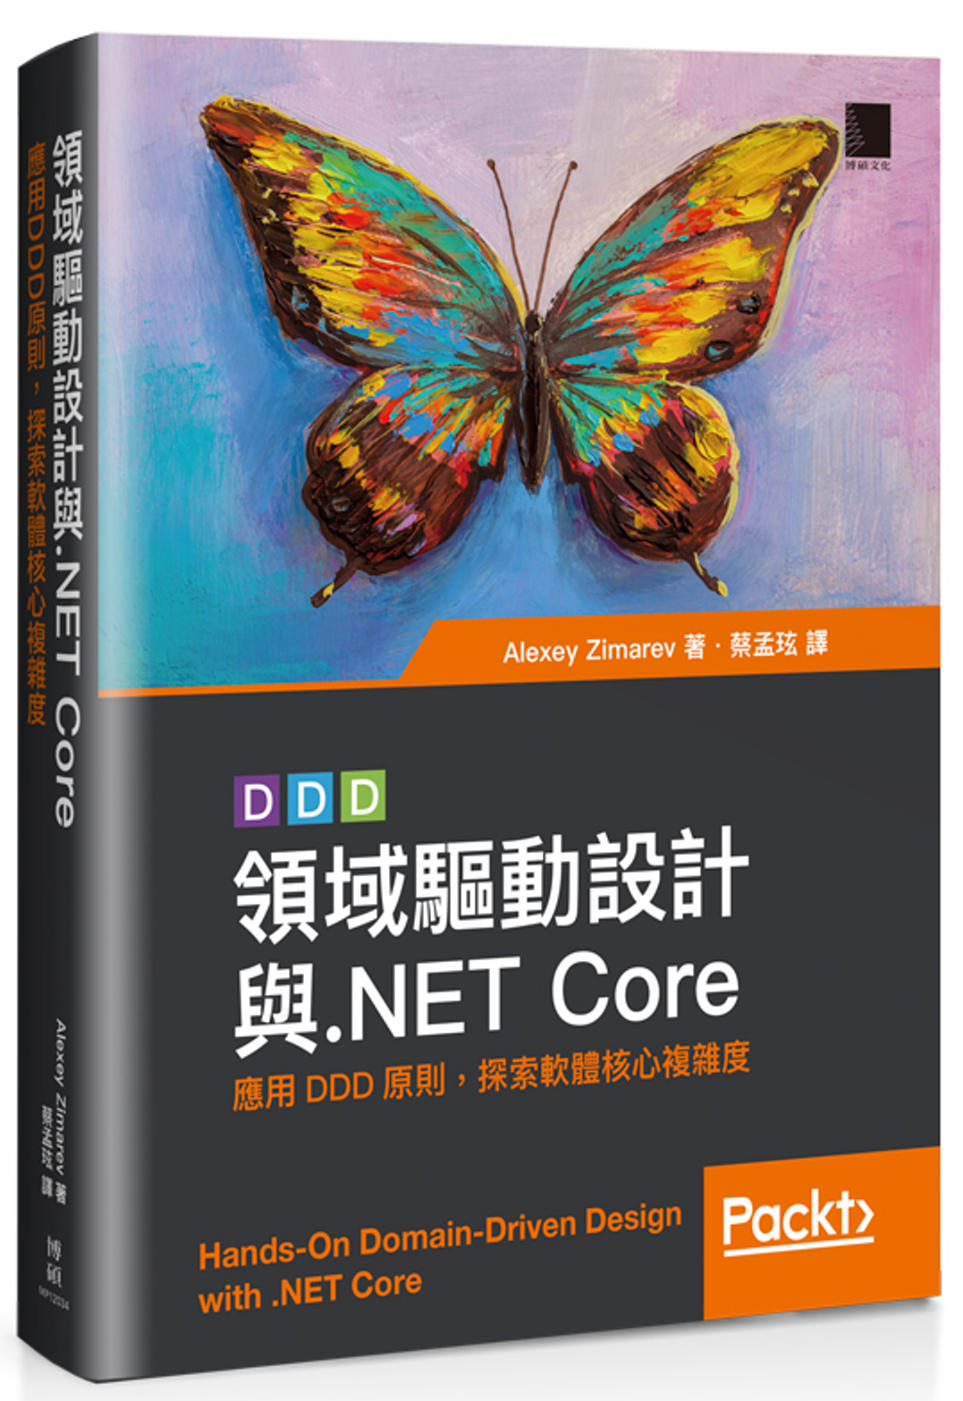 領域驅動設計與.NET Core：應用DDD原則，探索軟體核...